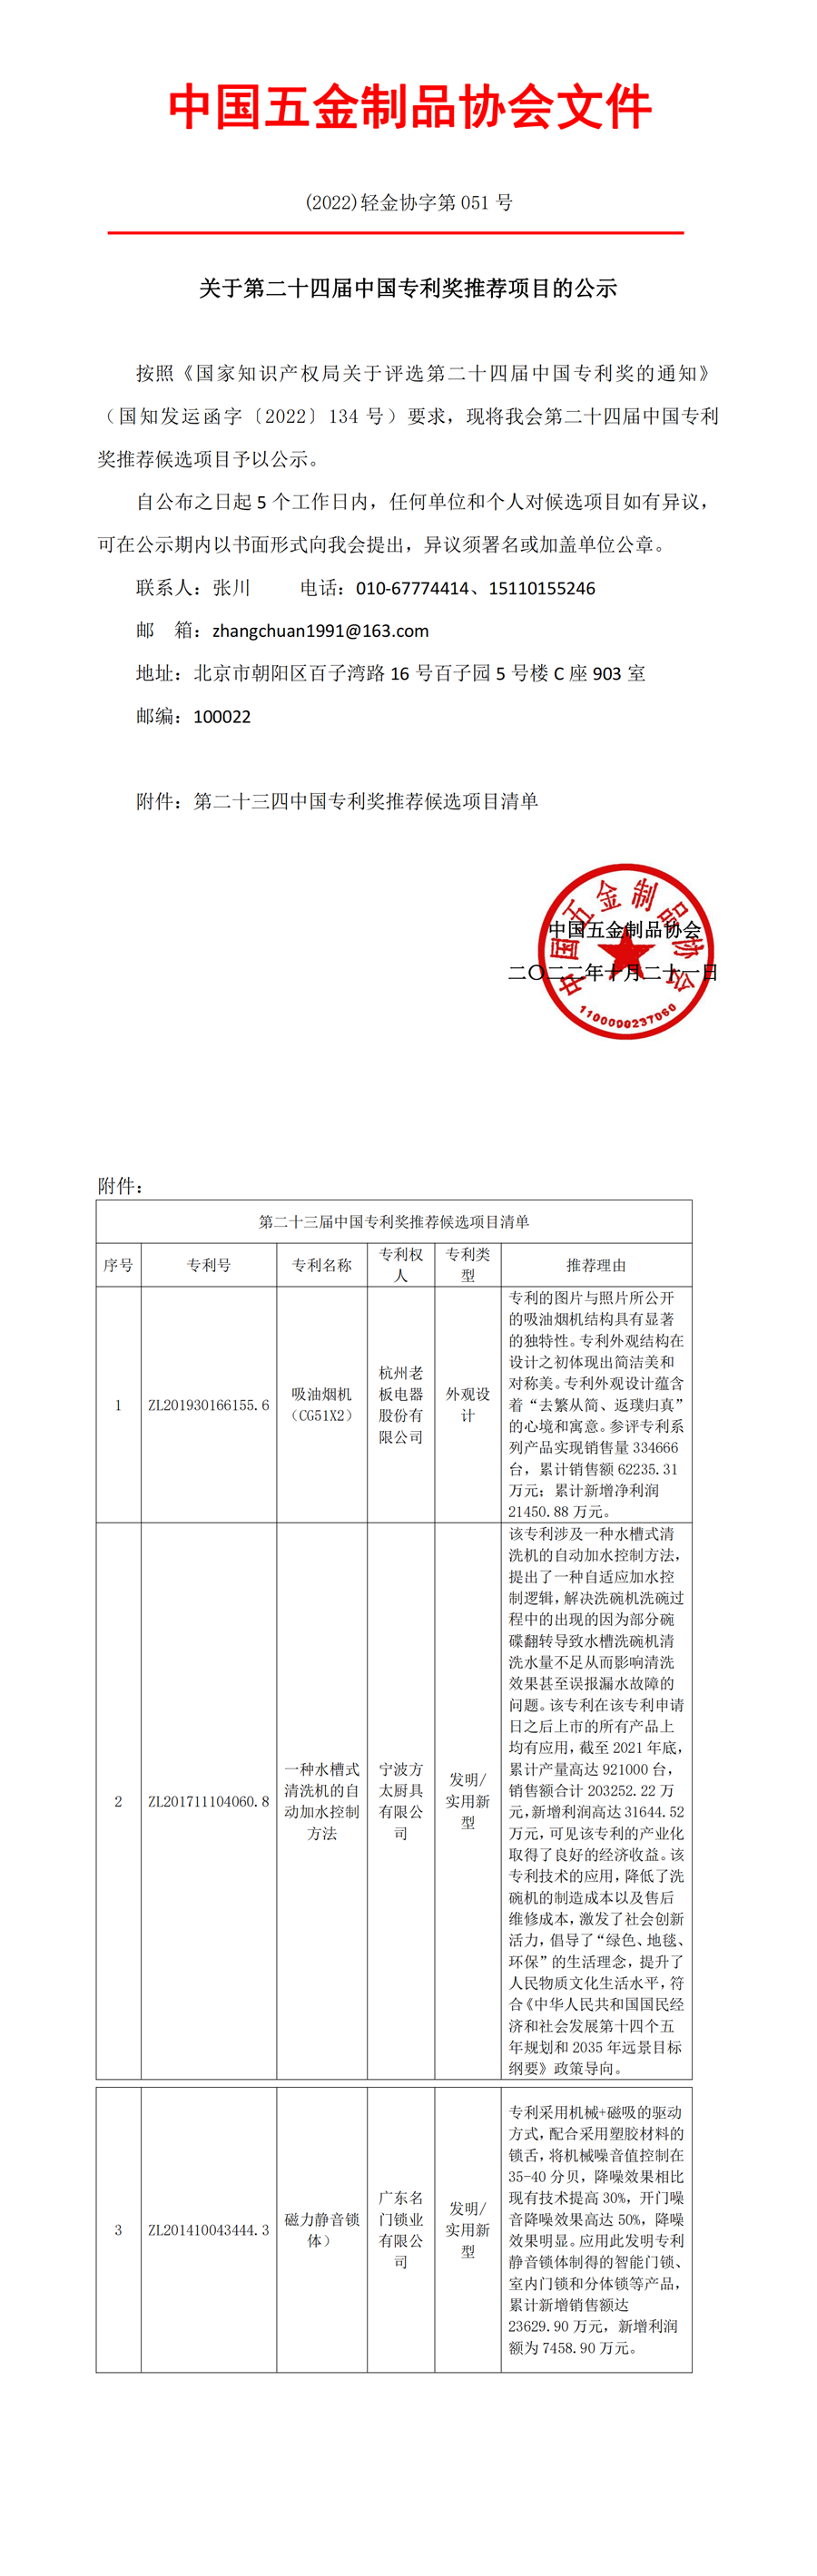 关于第二十四届中国专利奖推荐项目的公示.png